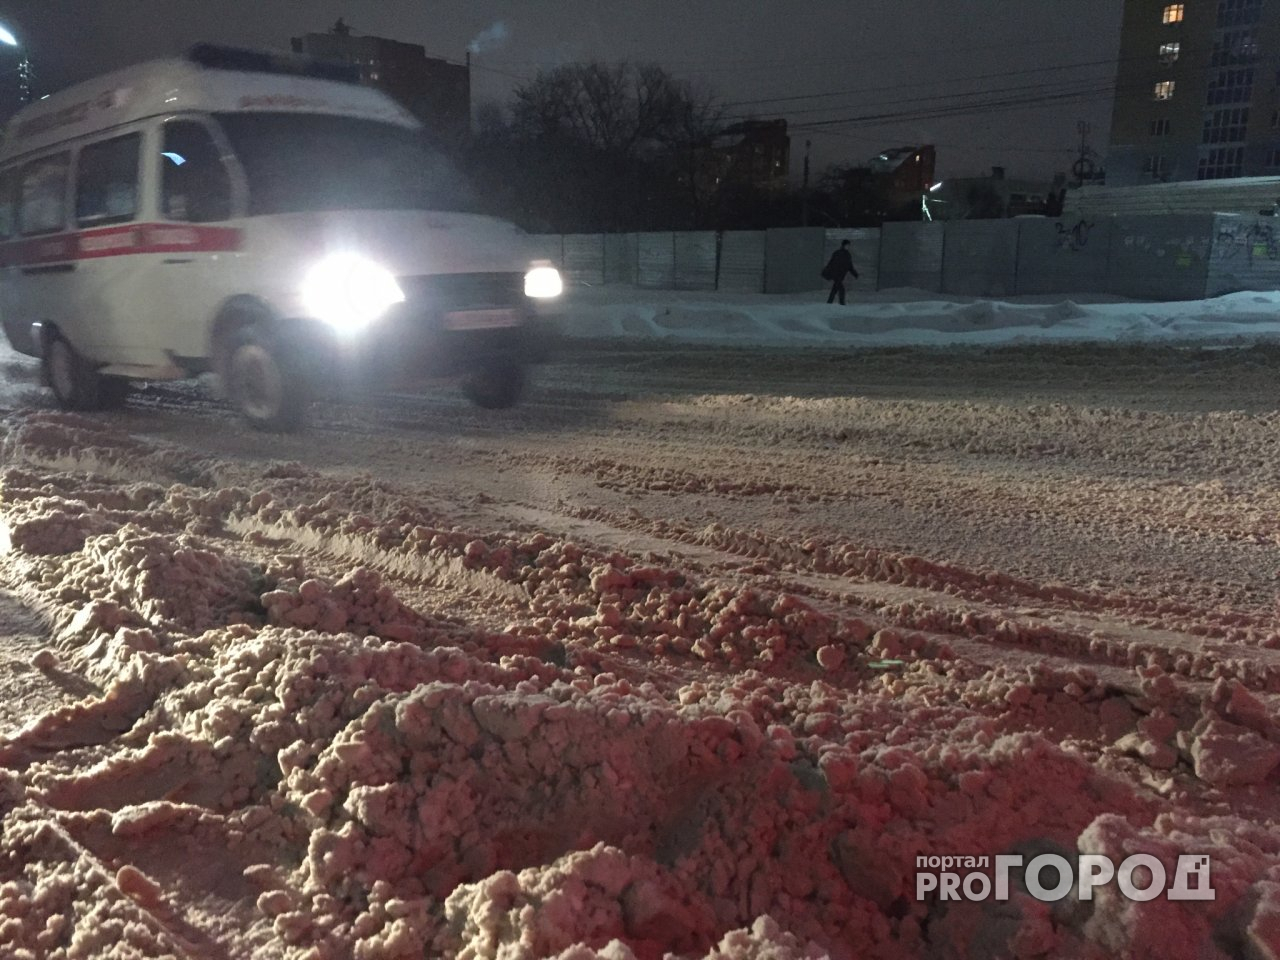 В Казани грузовик с кировскими номерами попал в ДТП: есть пострадавший